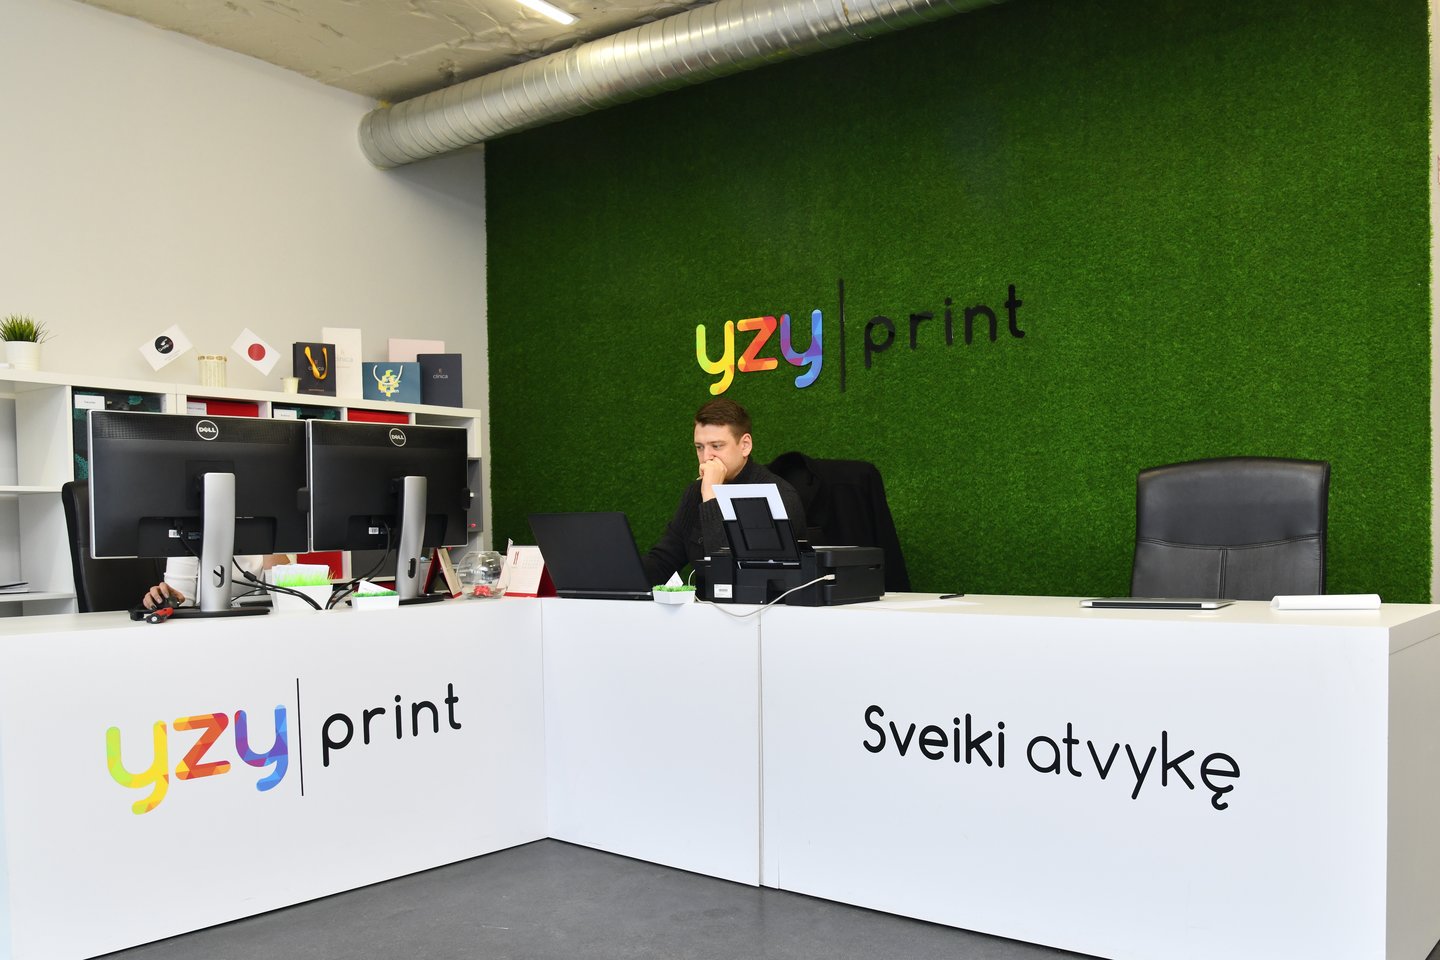  Antrus metus skaičiuojančiai įmonei „Yzy print“ iš kitų konkurentų išsiskirti padeda operatyvumas ir kokybė.